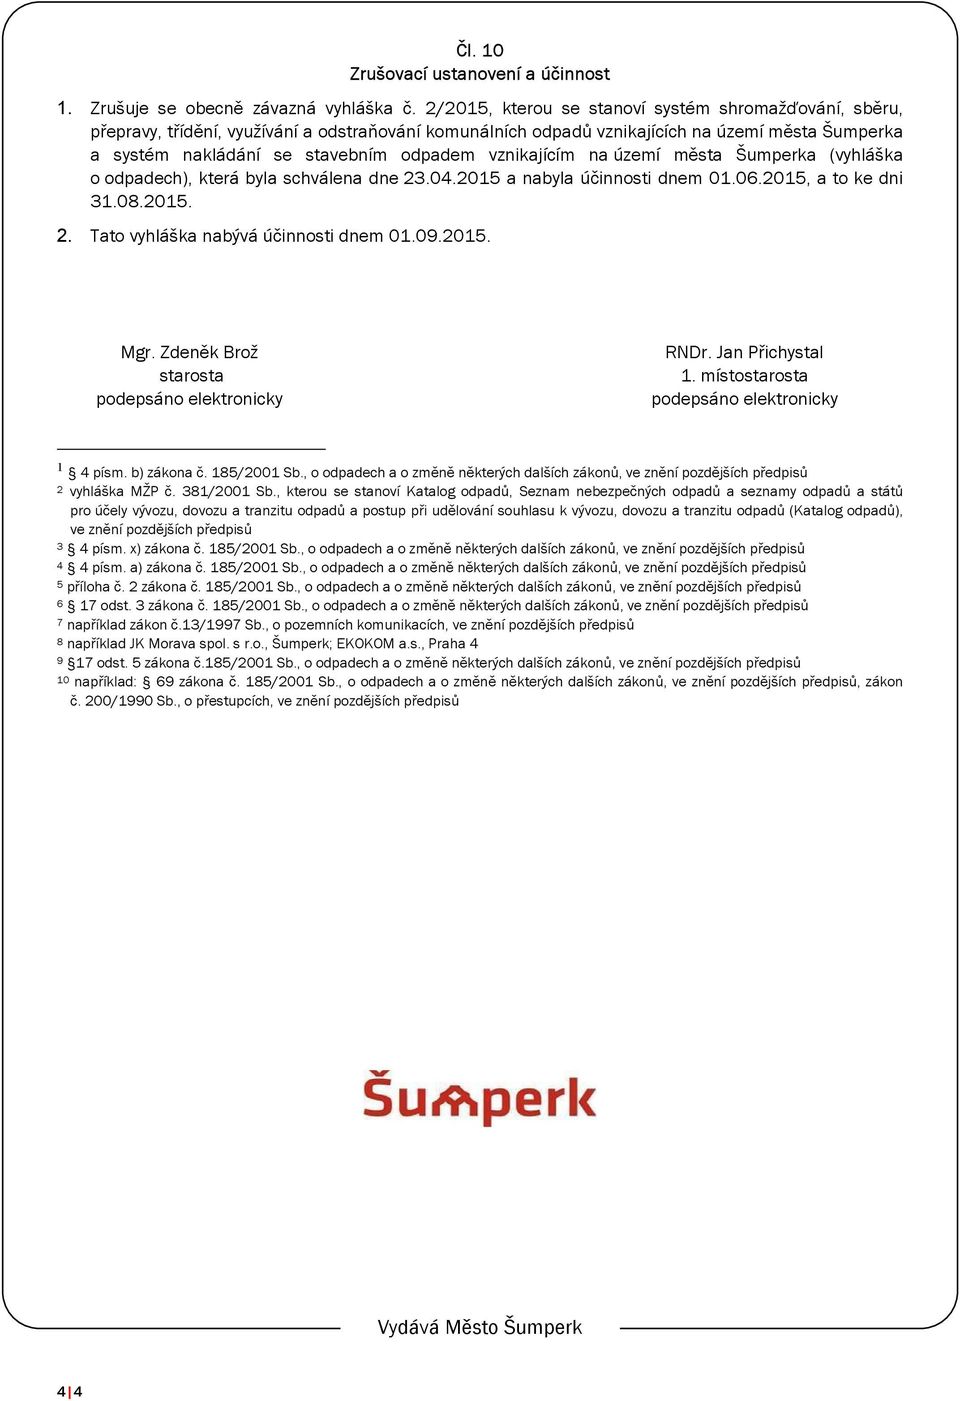 vznikajícím na území města Šumperka (vyhláška o odpadech), která byla schválena dne 23.04.2015 a nabyla účinnosti dnem 01.06.2015, a to ke dni 31.08.2015. 2. Tato vyhláška nabývá účinnosti dnem 01.09.